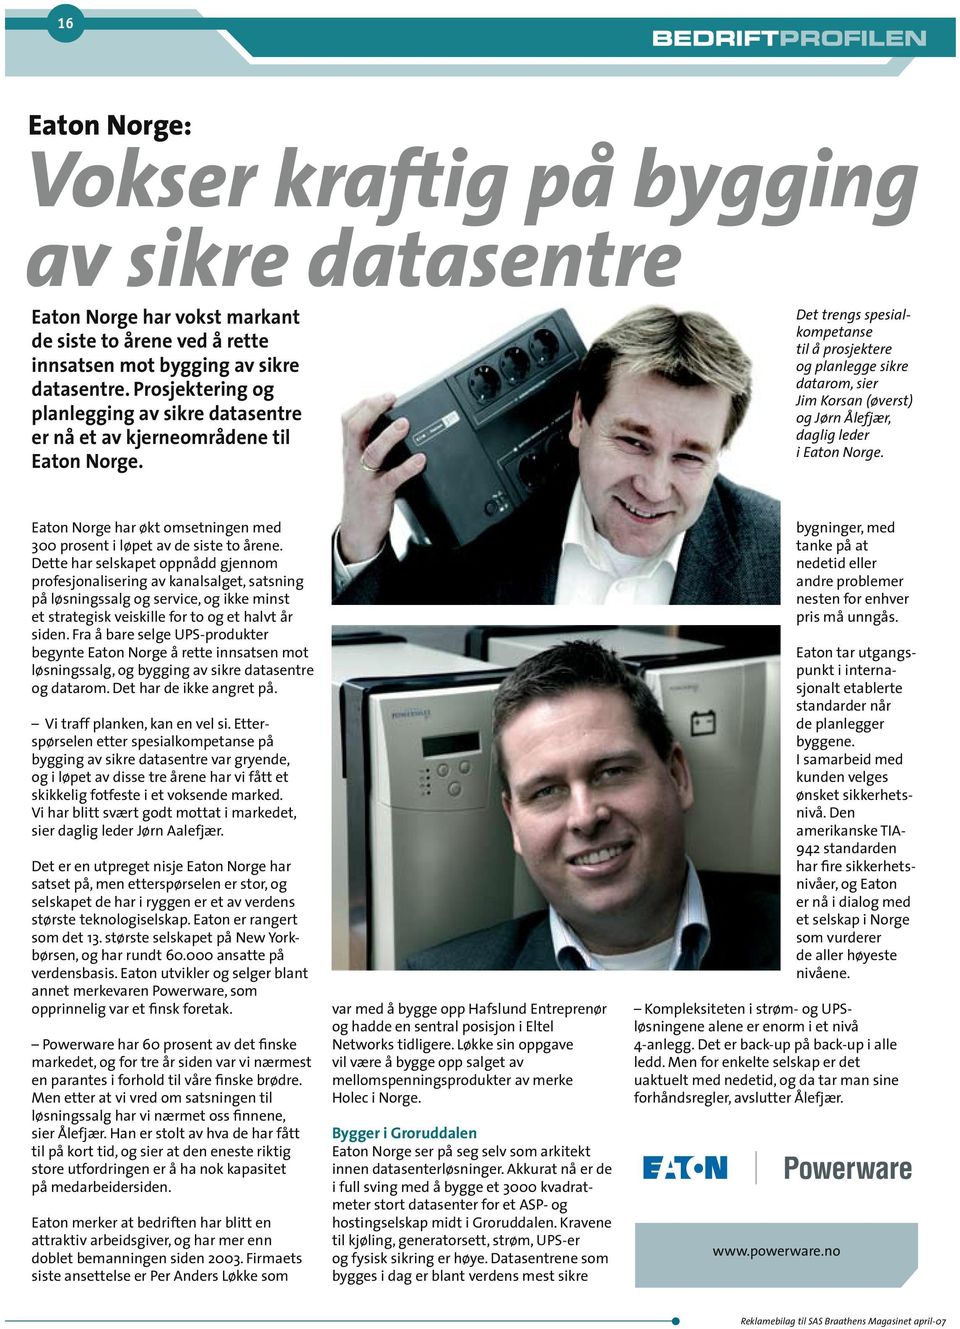 Det trengs spesialkompetanse til å prosjektere og planlegge sikre datarom, sier Jim Korsan (øverst) og Jørn Ålefjær, daglig leder i Eaton Norge.